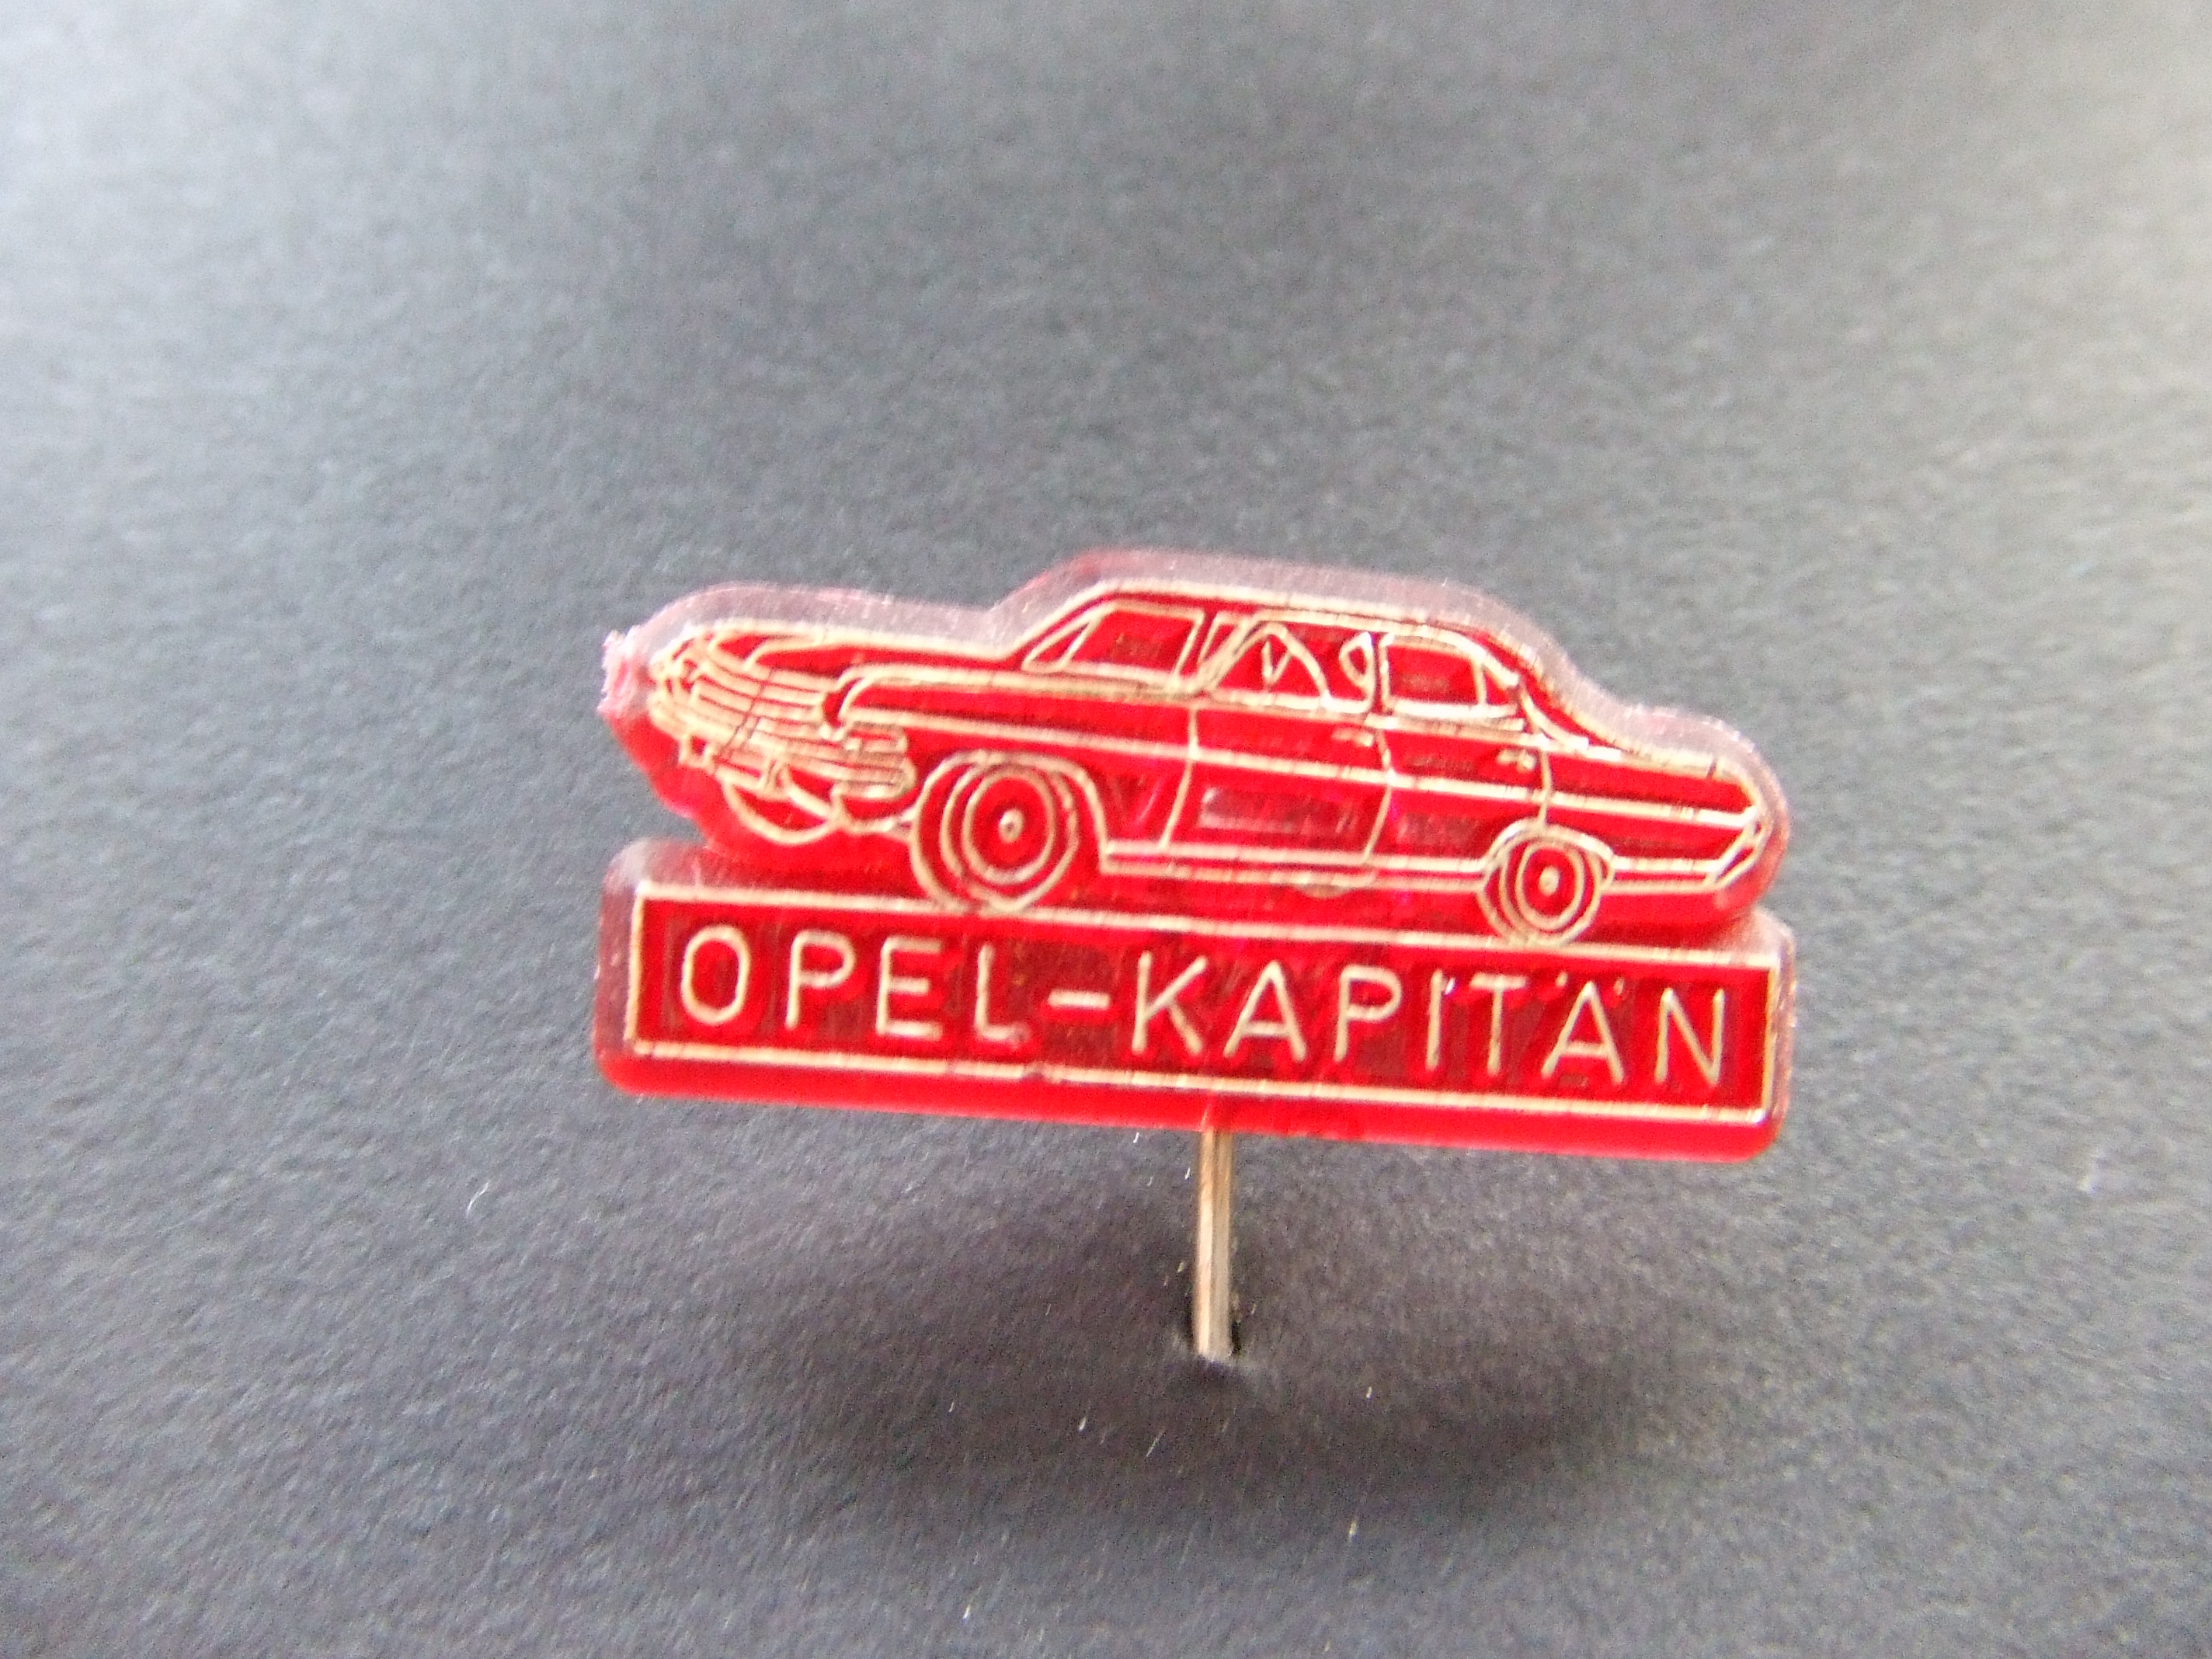 Opel Kapitan rood oldtimer